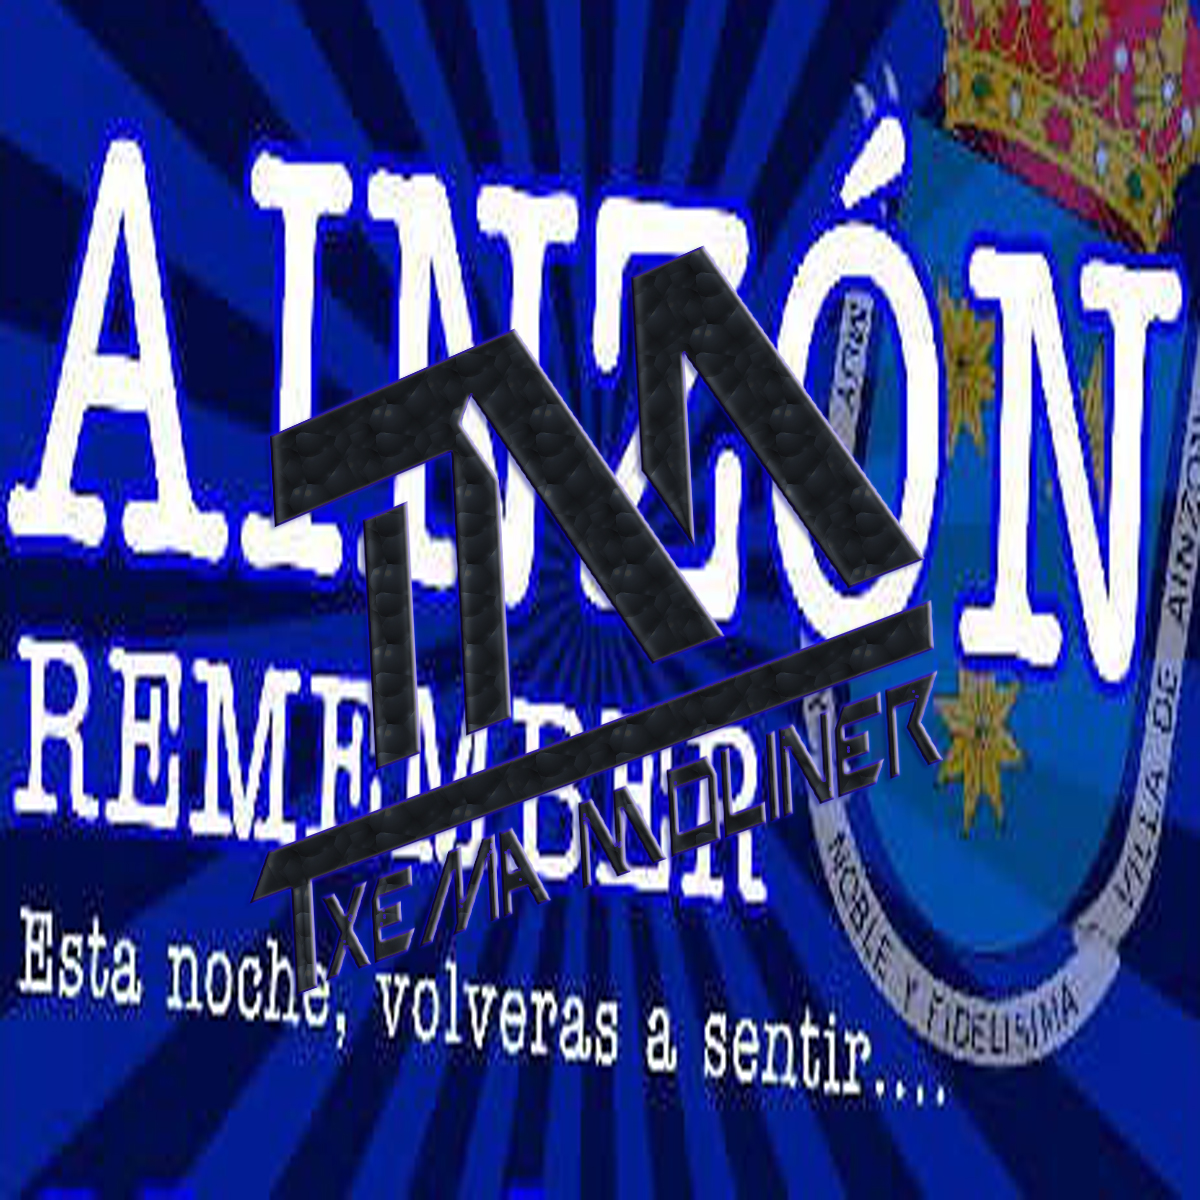 Remember Ainzon